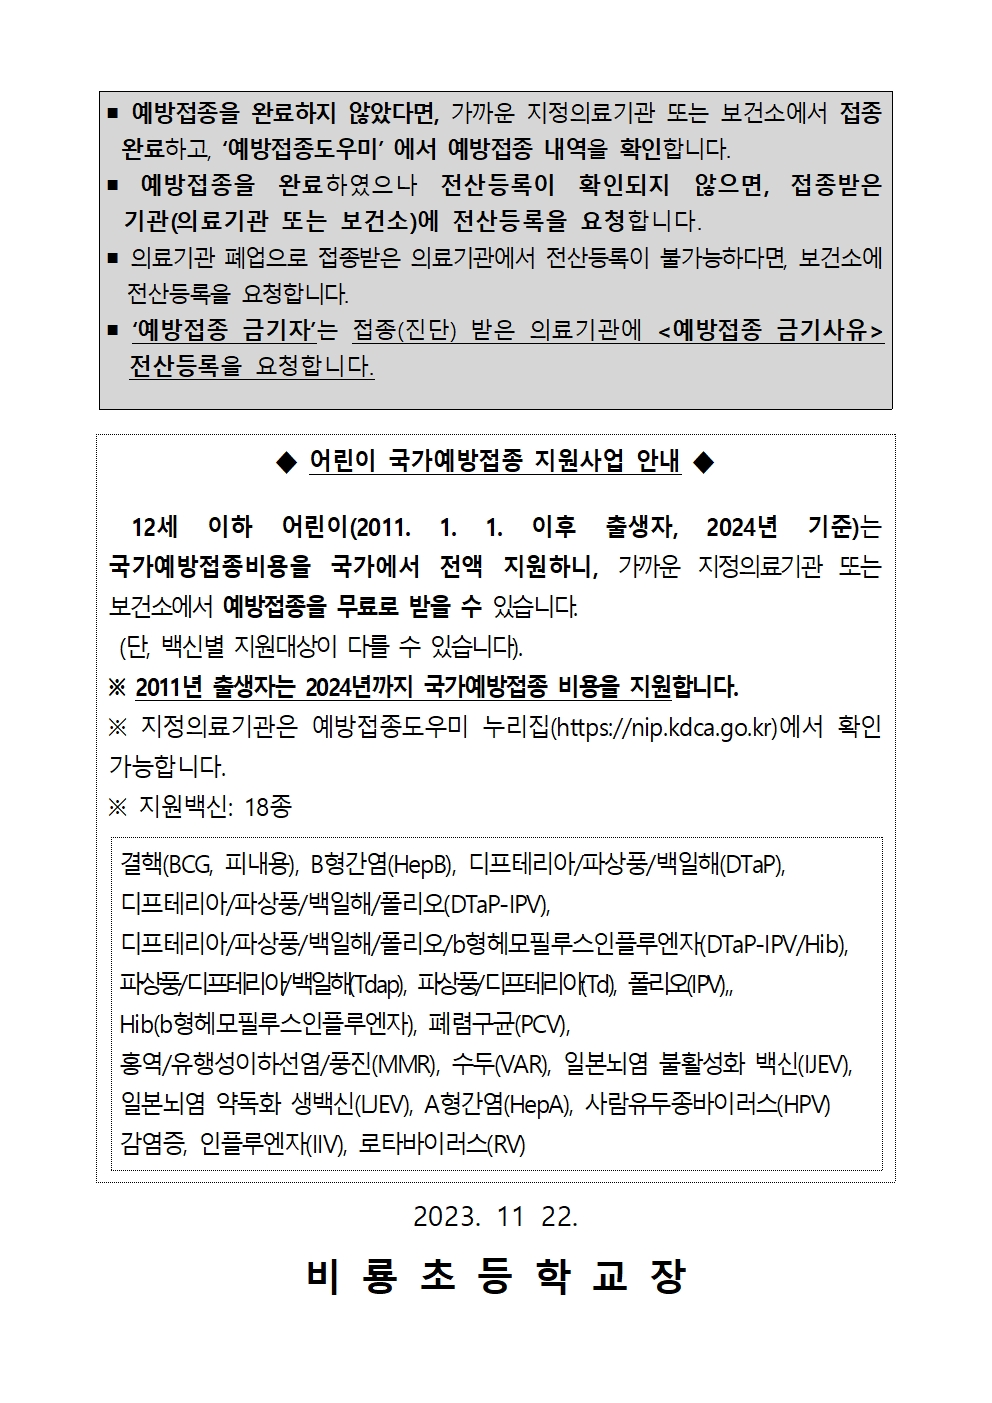 (붙임) 중학교 입학생 예방접종 확인사업 안내장(확대)002